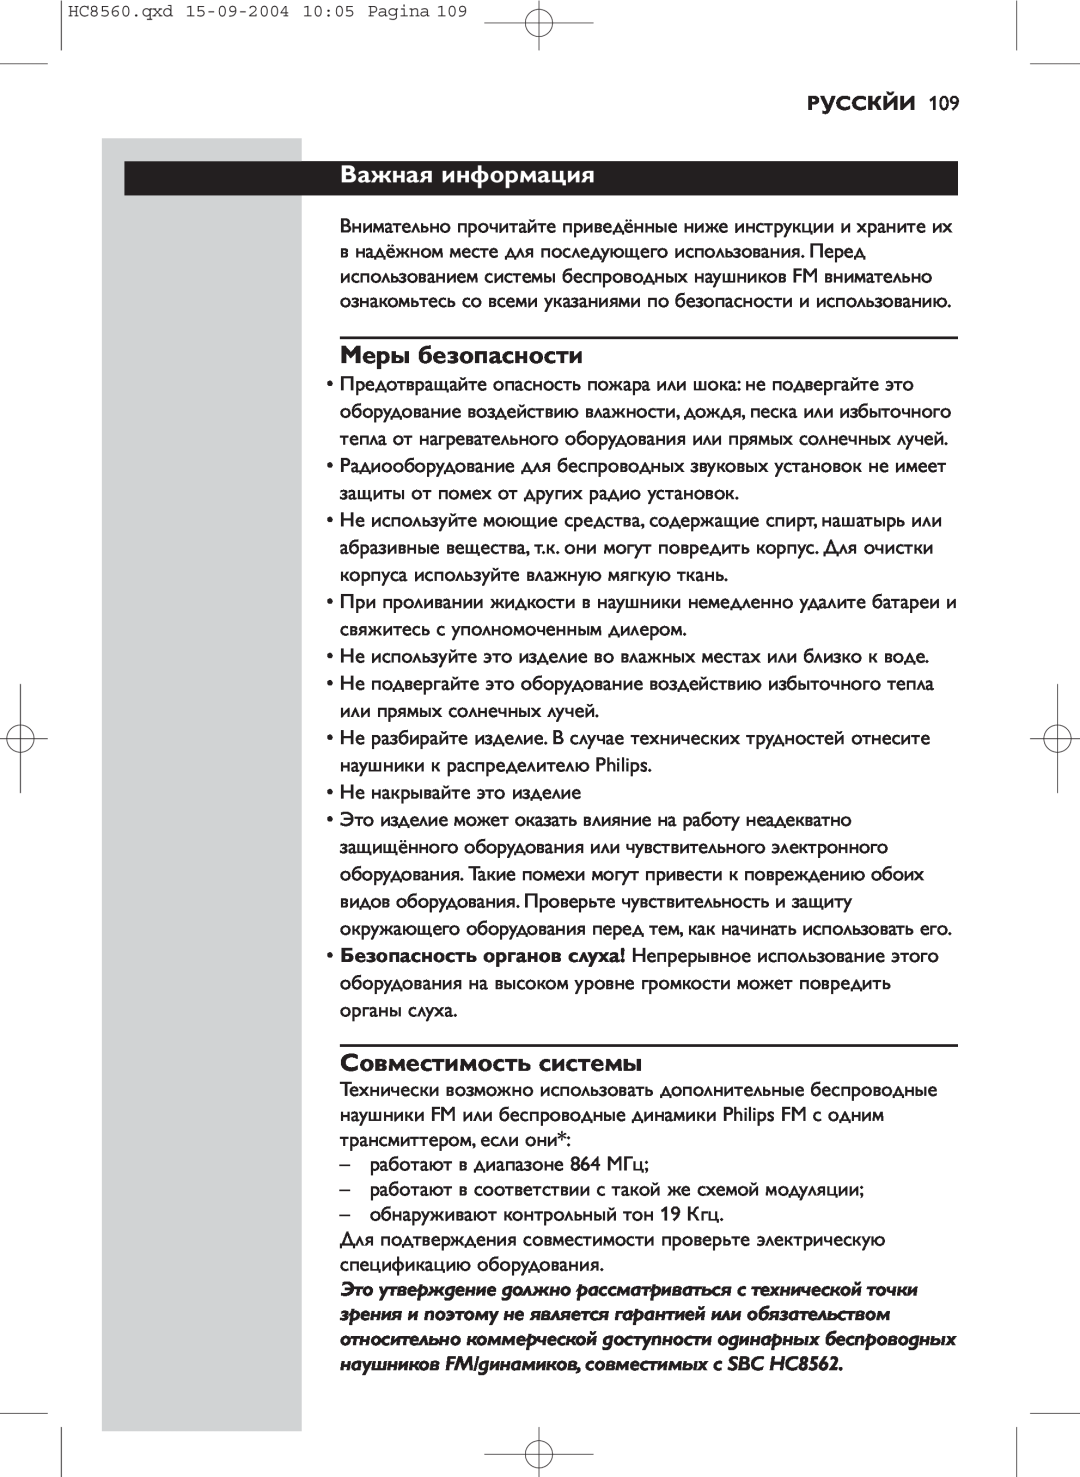 Philips HC 8560 manual Важная информация, Меры безопасности, Совместимость системы, Русскйи 